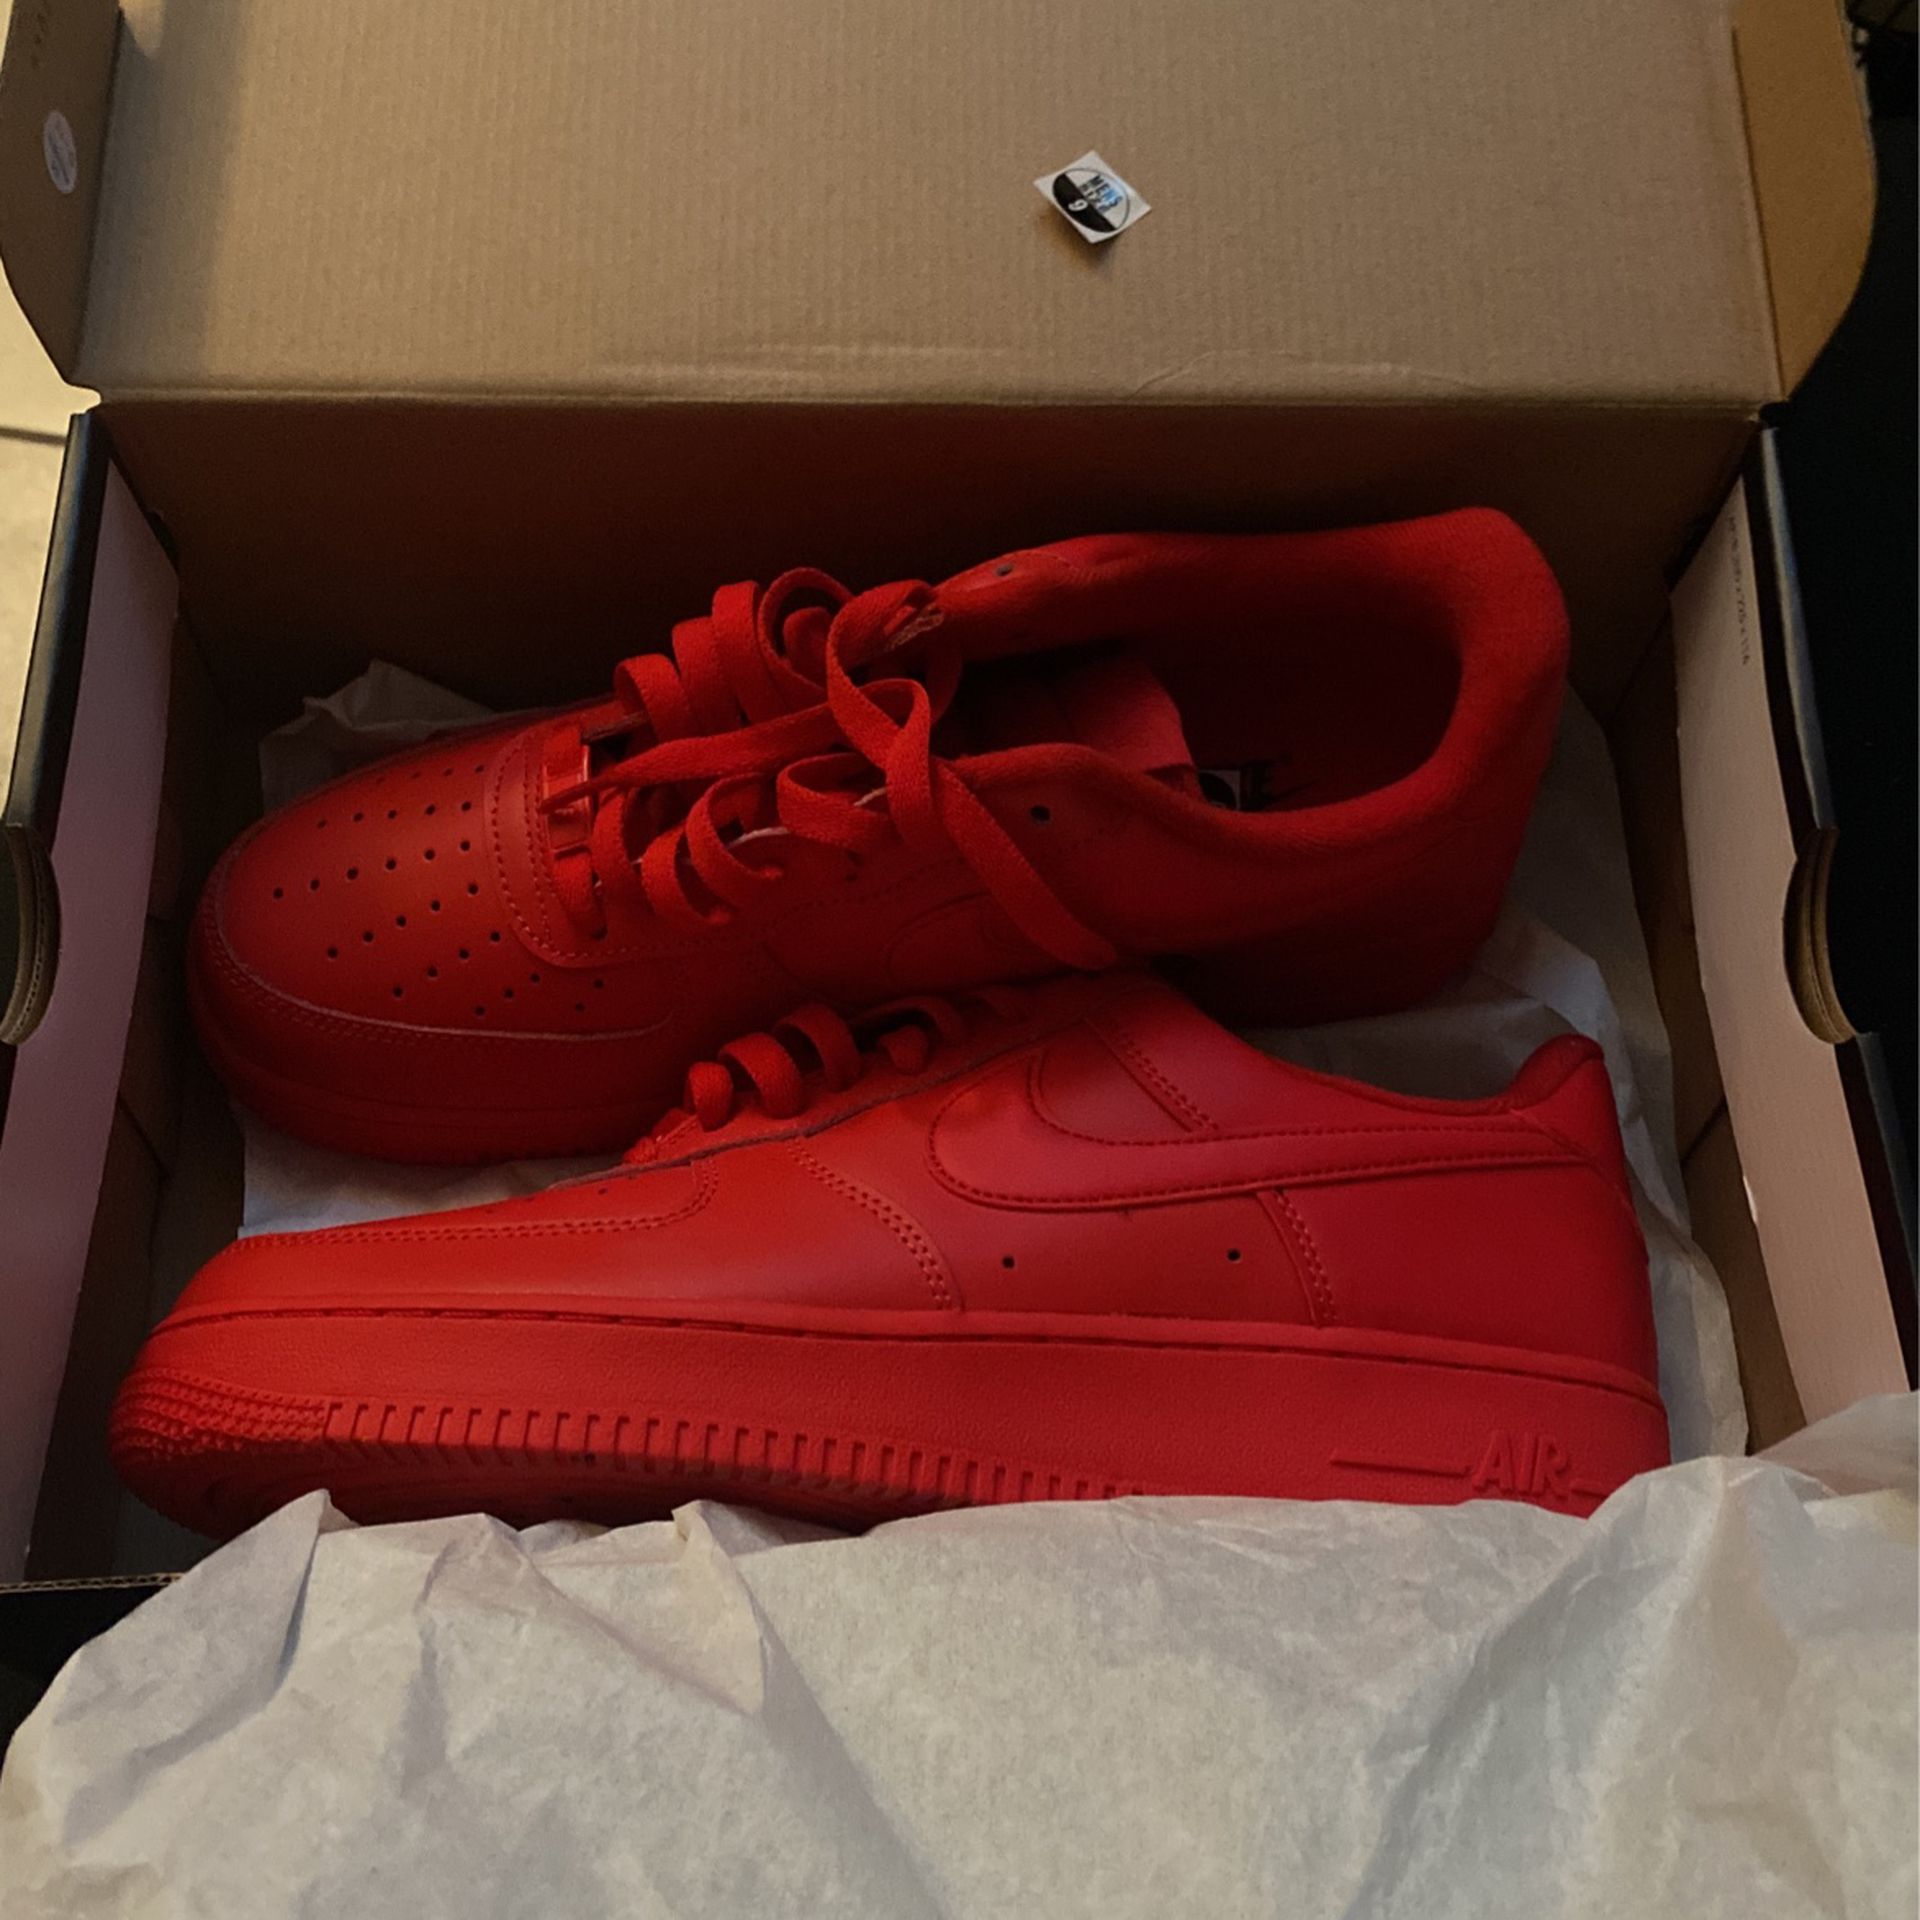 Nike Red Af1s for Sale in Las Vegas, NV - OfferUp